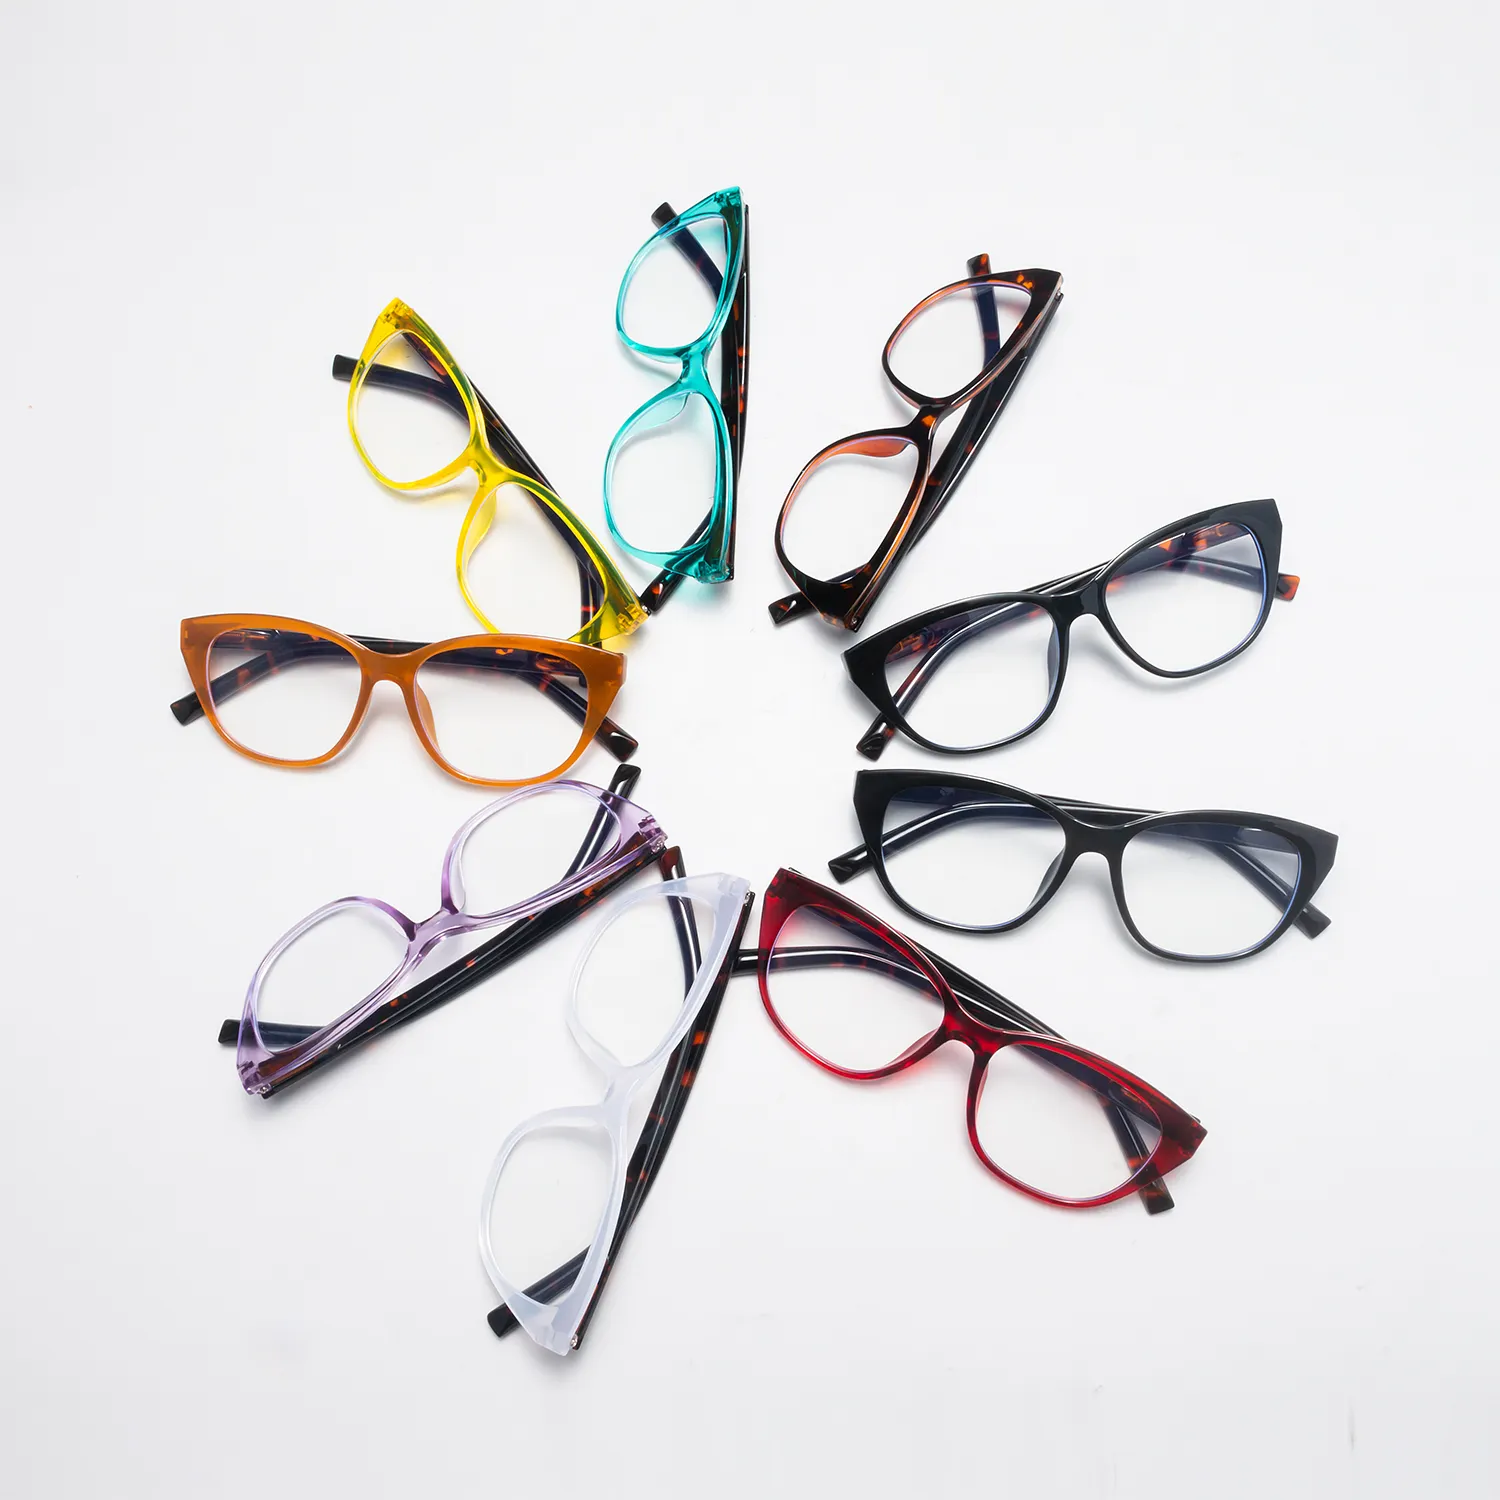 BLONGU Cheap Eyeglass Frame Cat Eye Reading Glasses Anti Blue Light Blue Designer Eye Protection Glasses For Men and Women